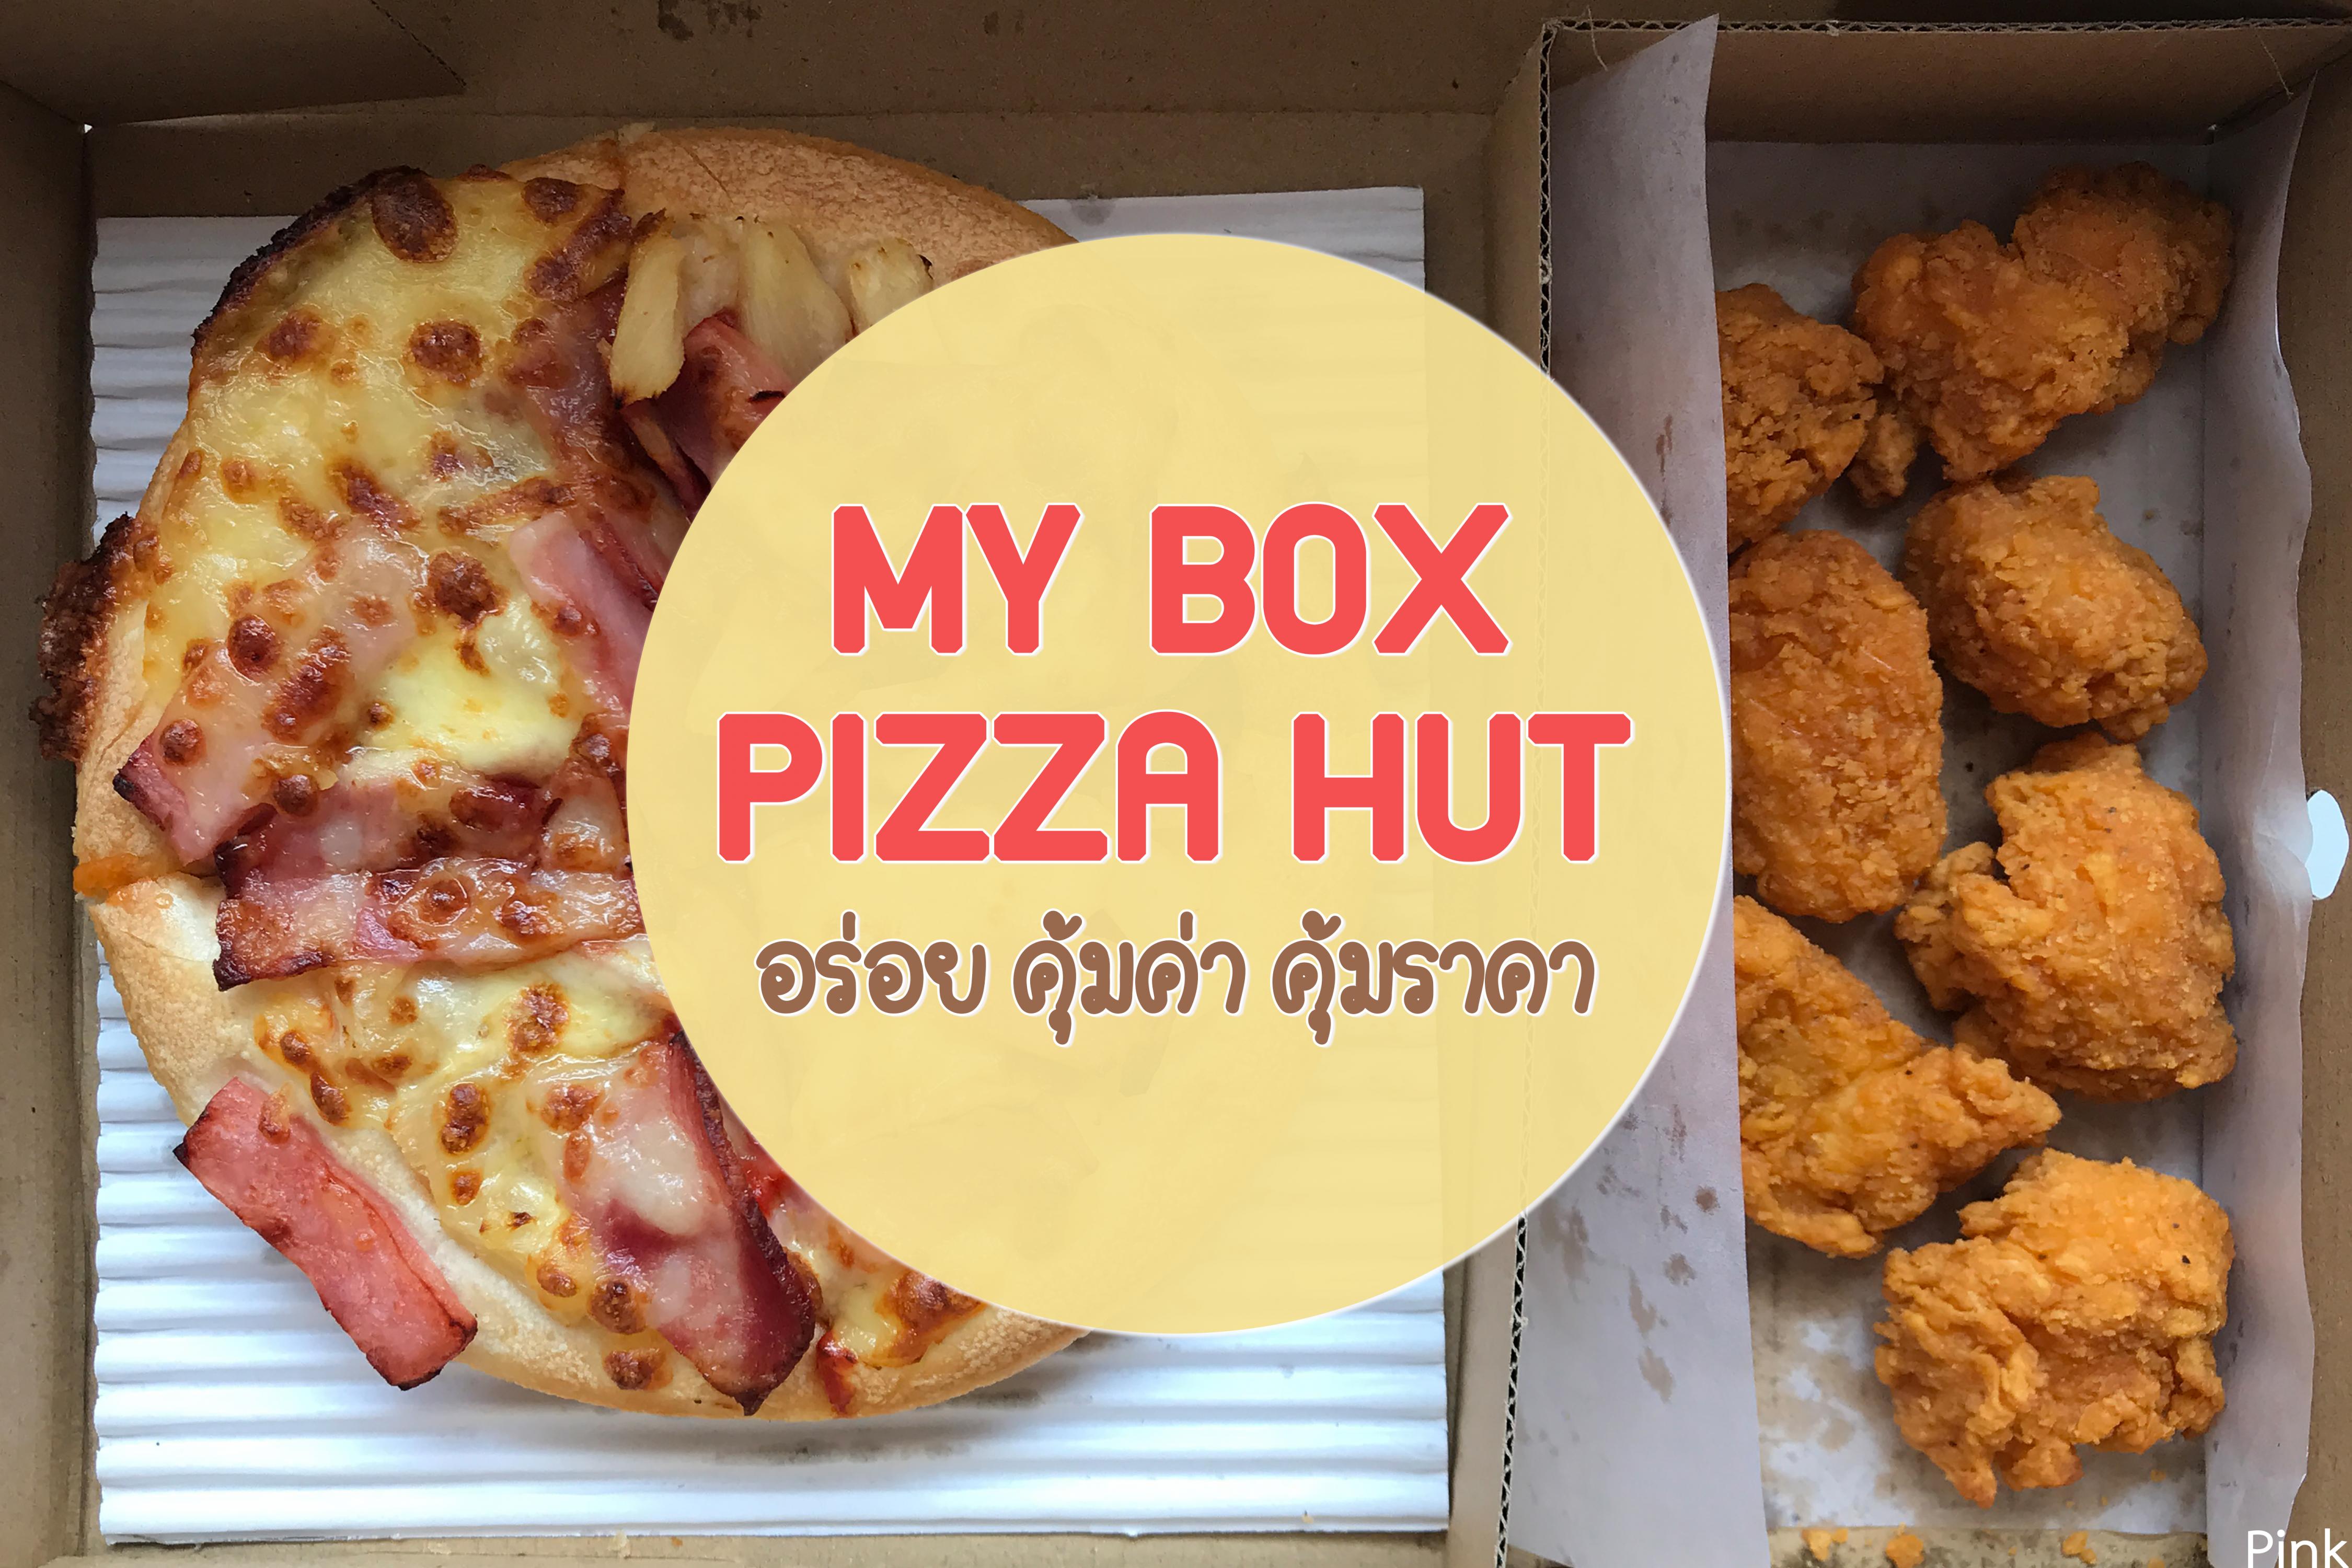 My box pizza hut